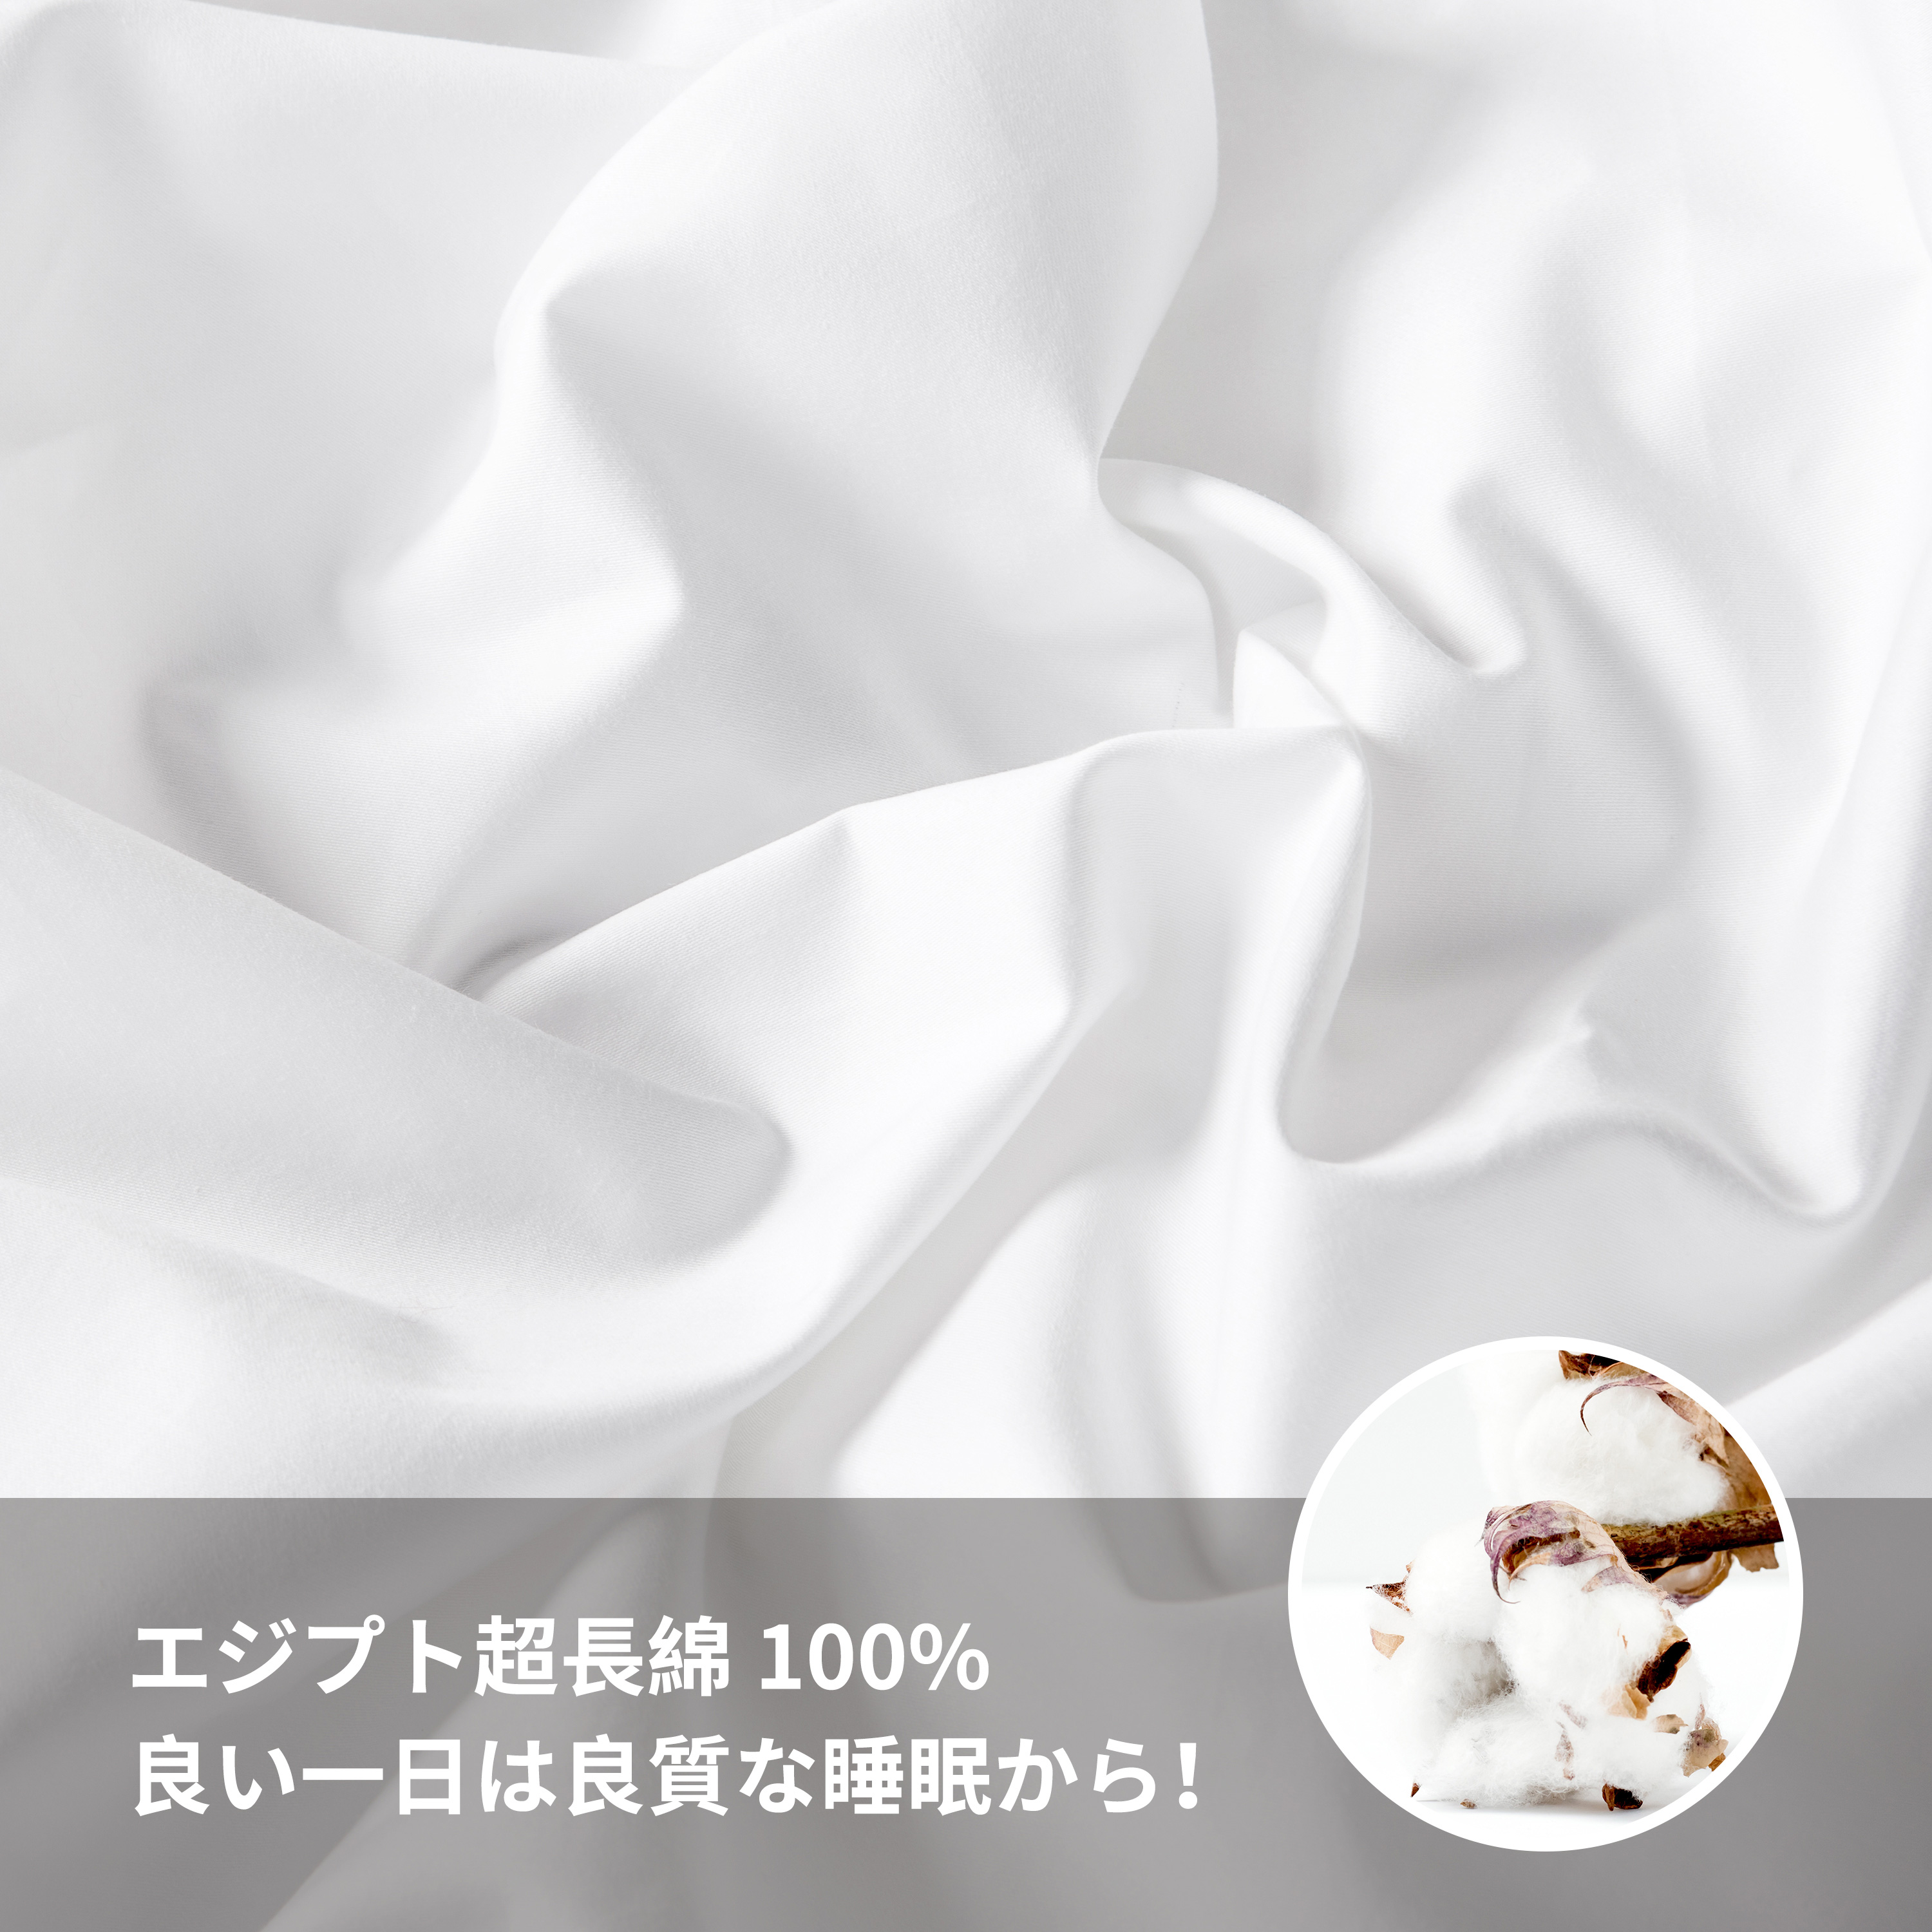 ☆新春福袋2021☆ 枕カバー 2枚 綿100% 封筒式 50×70cm ブラック zppsu